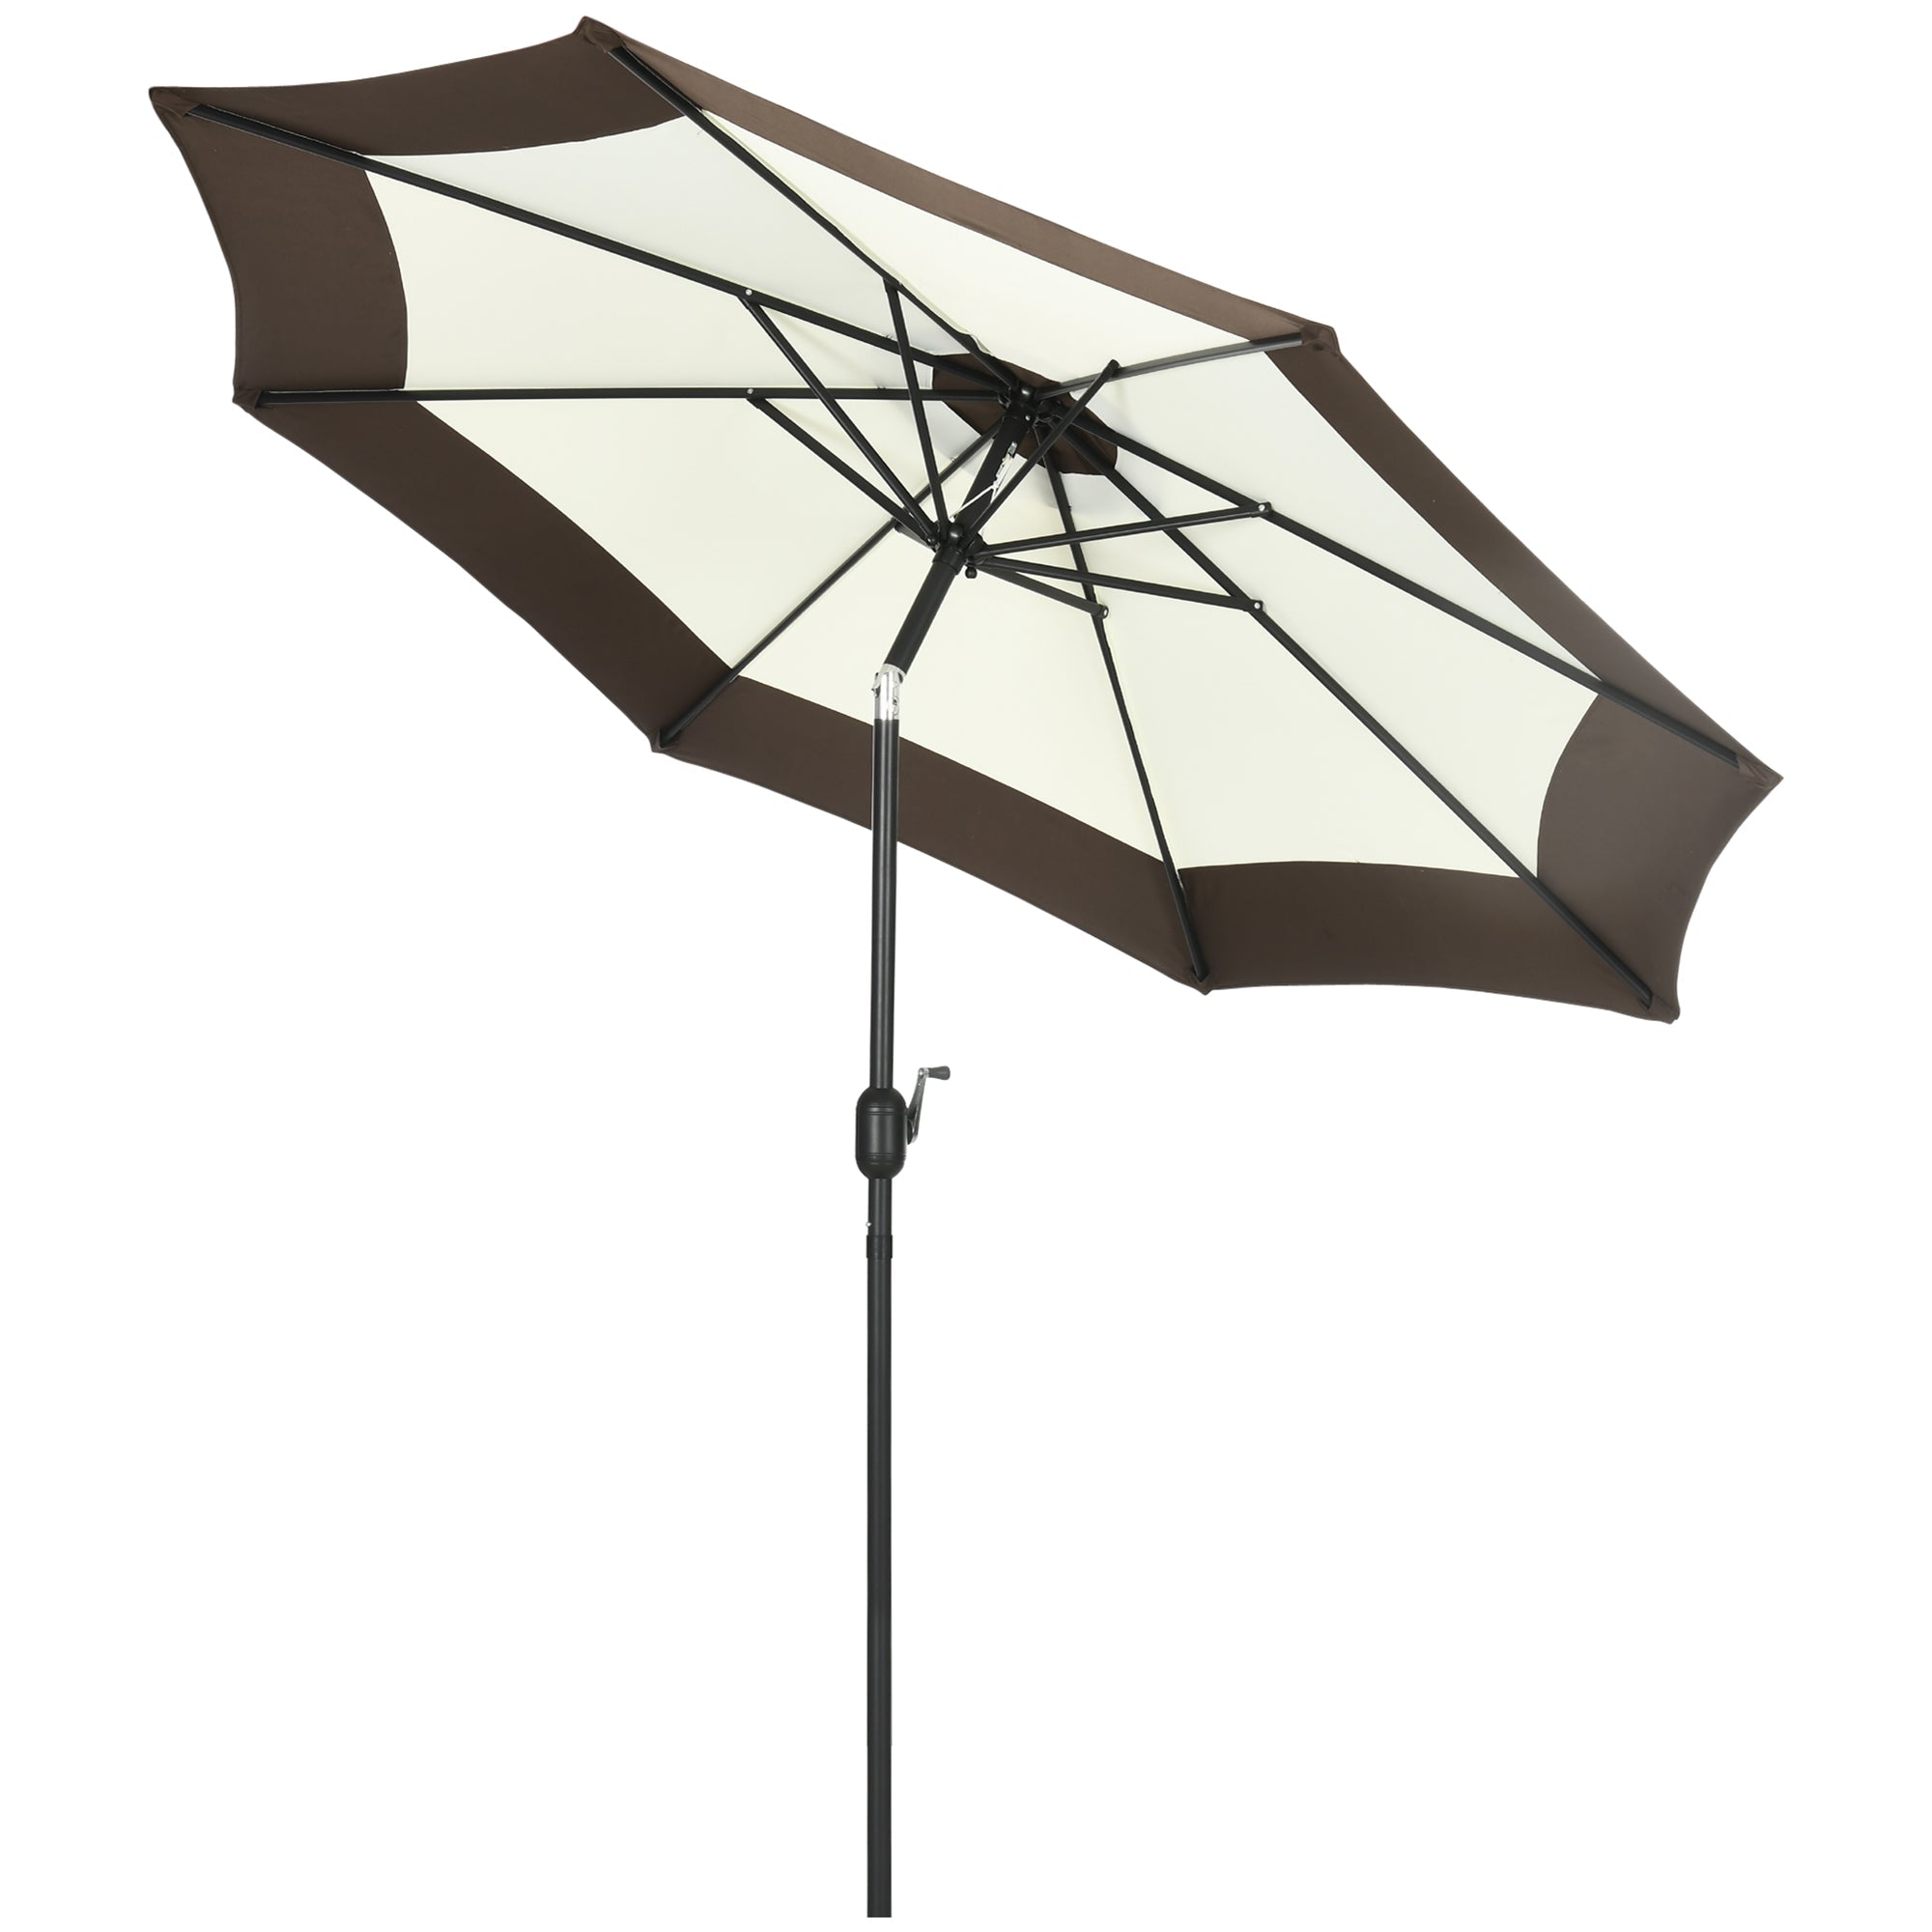 2.7m Garden Parasol Umbrella with 8 Metal Ribs, Tilt and Crank, Outdoor Sunshades for Garden, Patio, Beach, Yard, Coffee-0